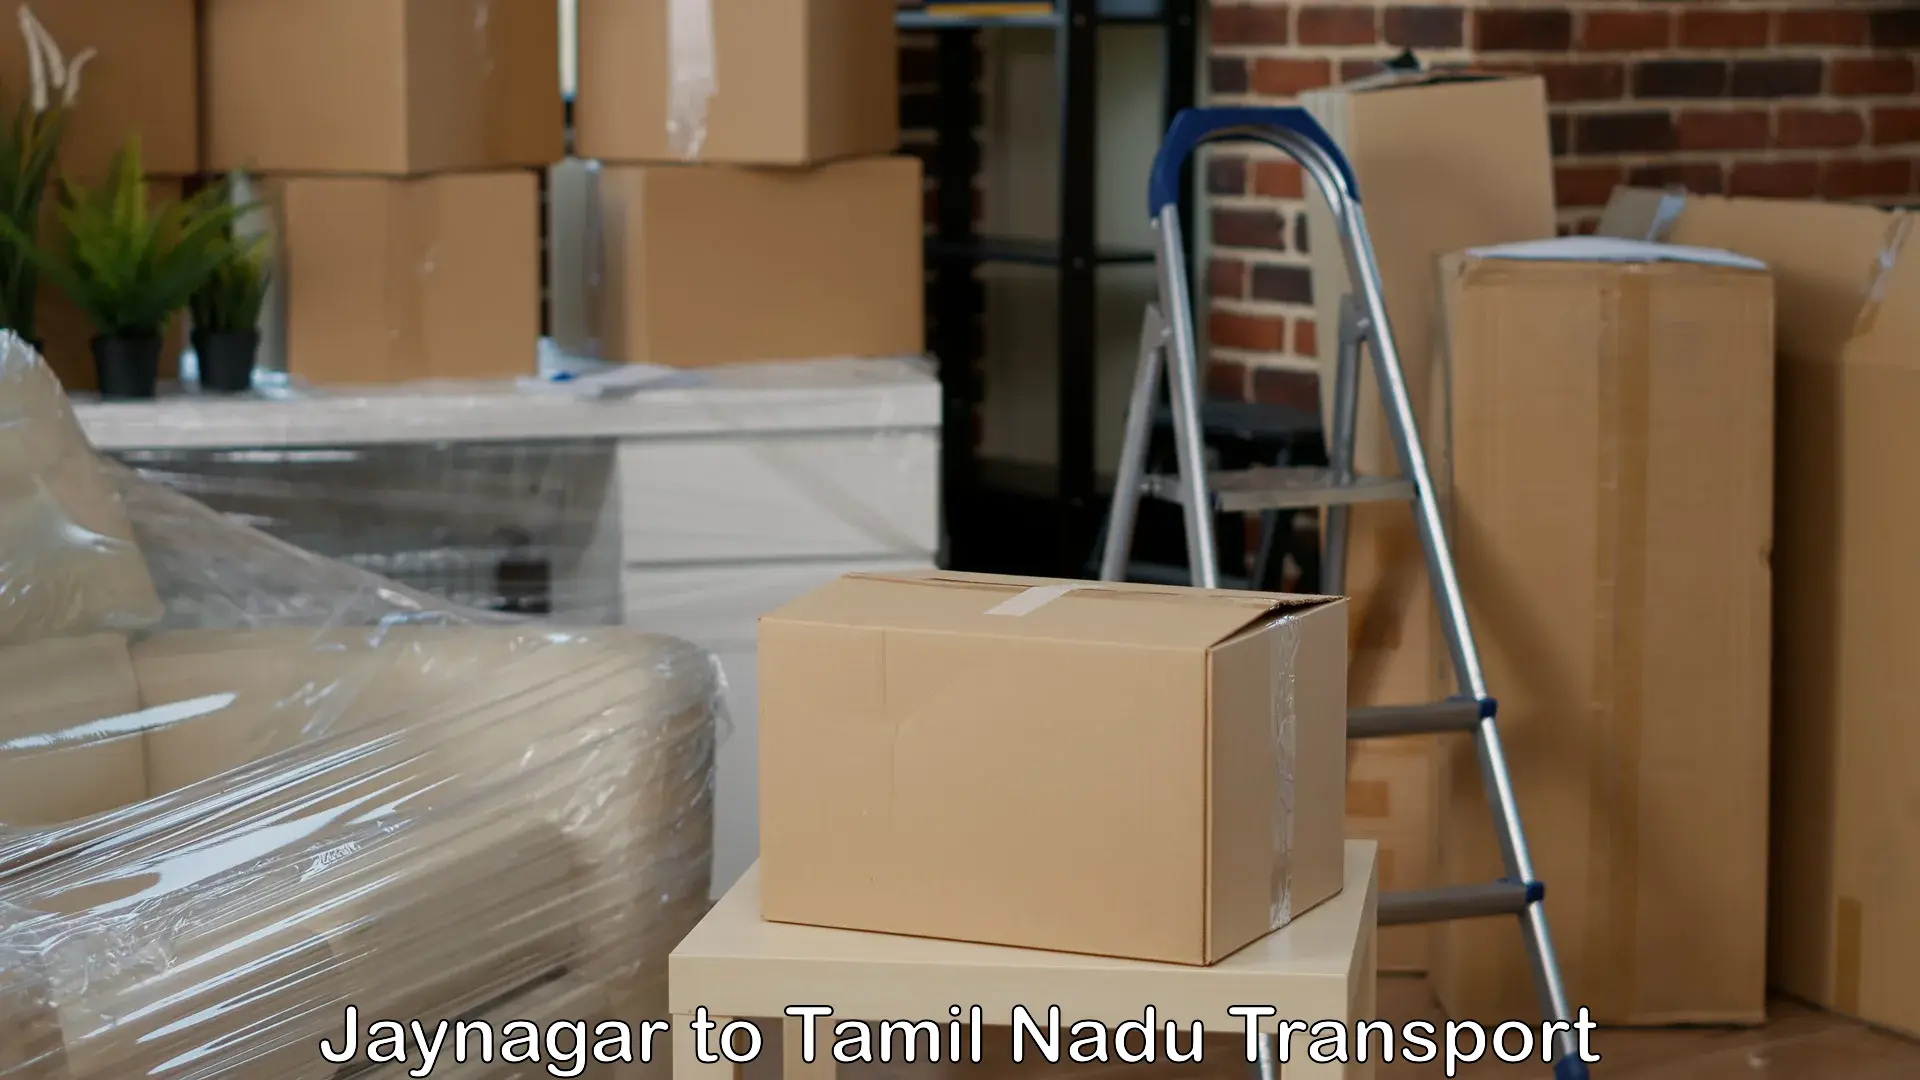 Domestic goods transportation services Jaynagar to Tiruvallur